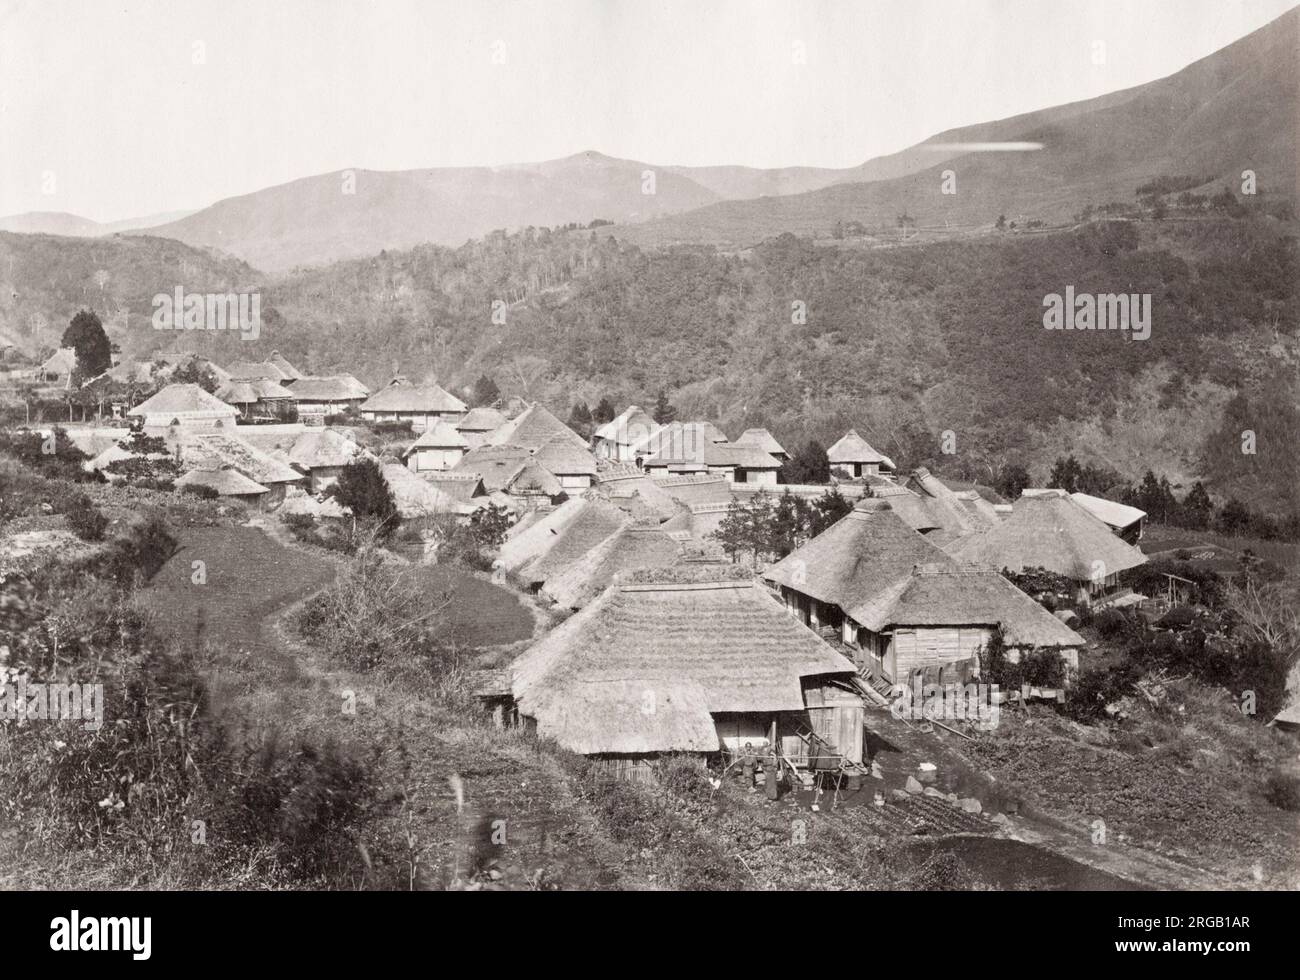 Vintage 19. Jahrhundert Foto: Dorf Miyanoshita, Japan, bekannt für seine heißen Quellen. Stockfoto